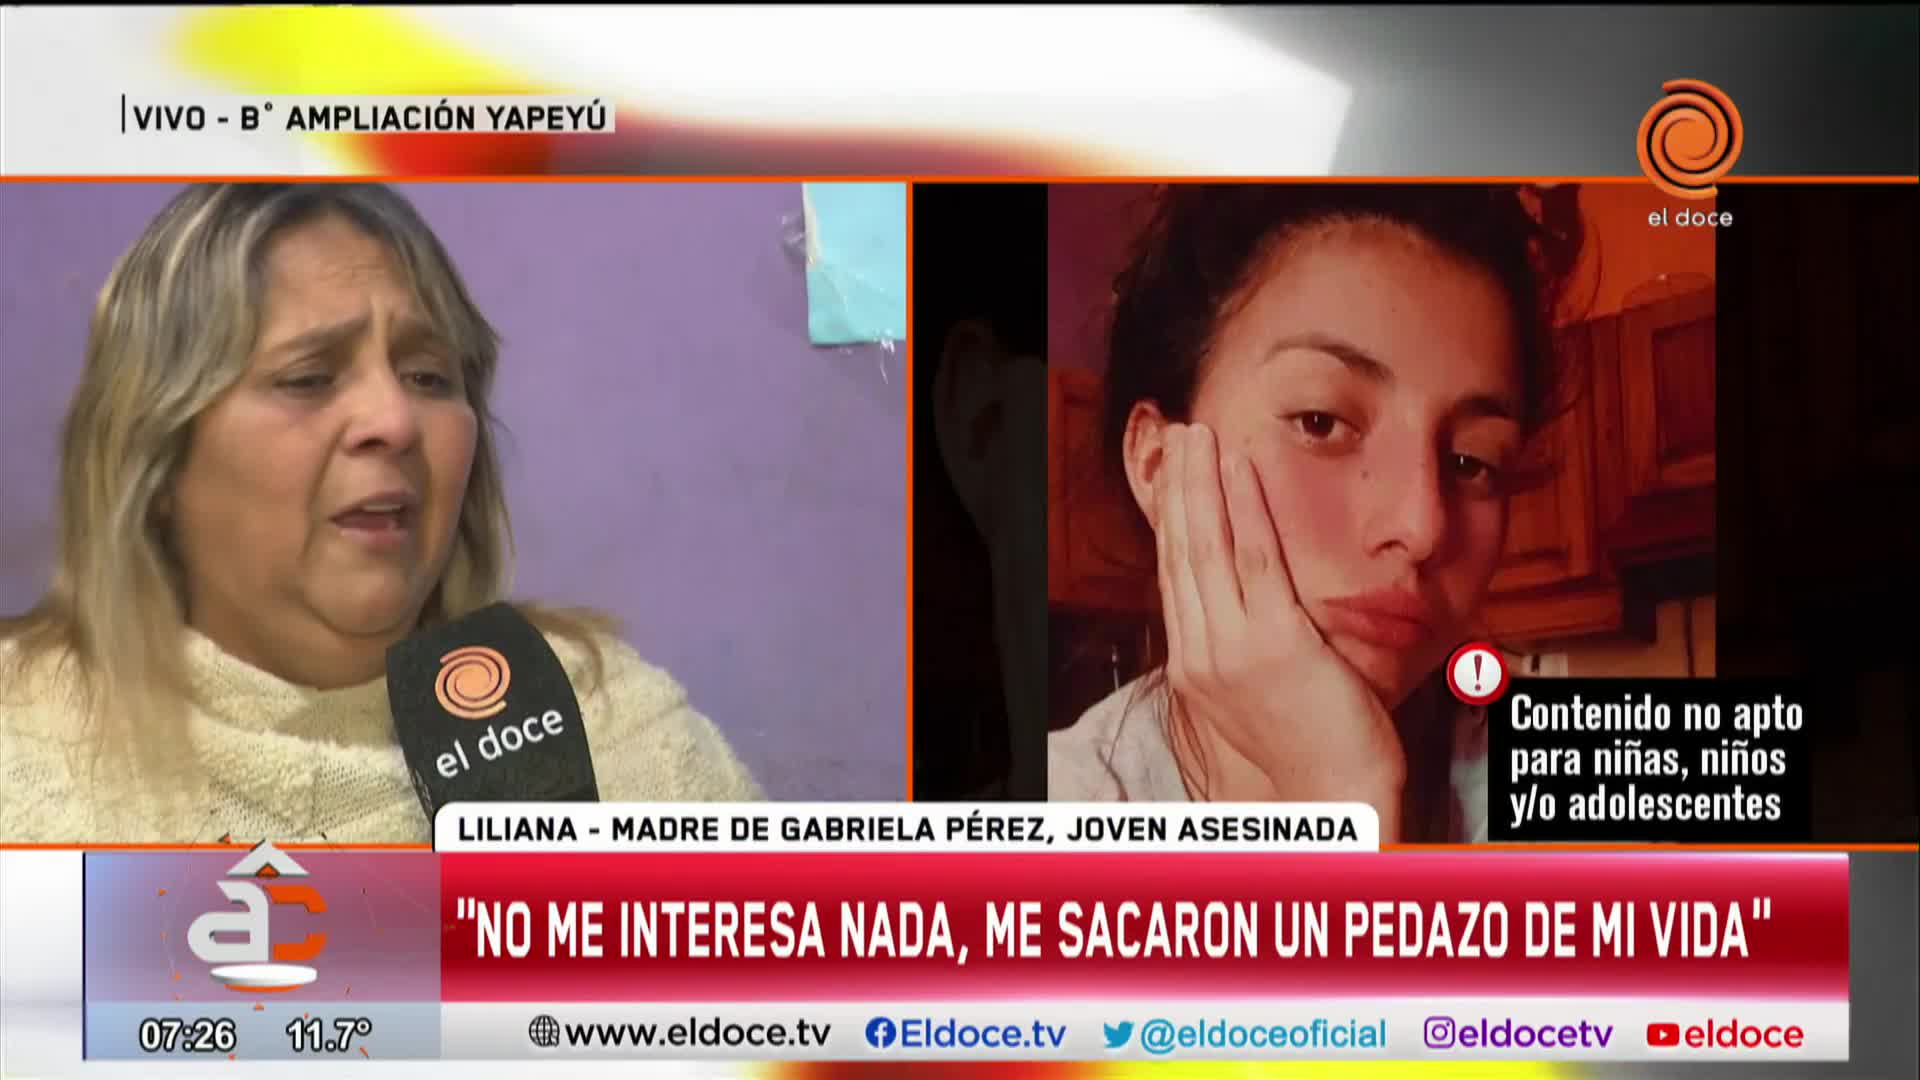 La familia de Gabriela Pérez denunció que recibió mensajes intimidantes